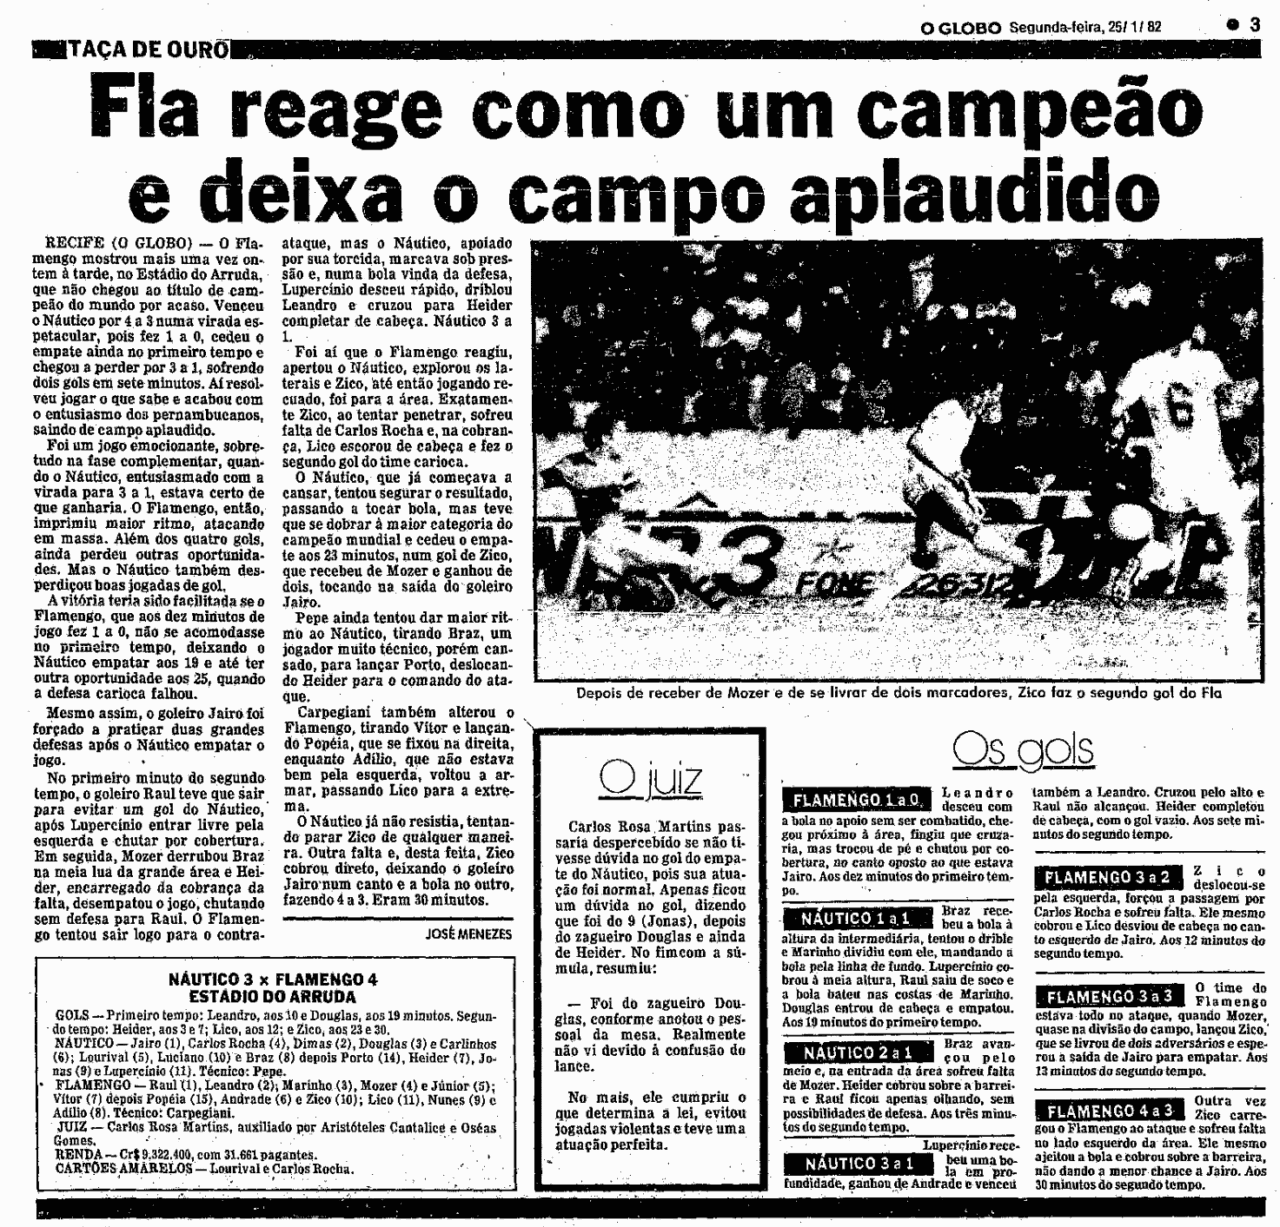 Flamengo conseguiu grande virada contra o Náutico quatro dias depois do jogo com o São Paulo - Acervo "O Globo"